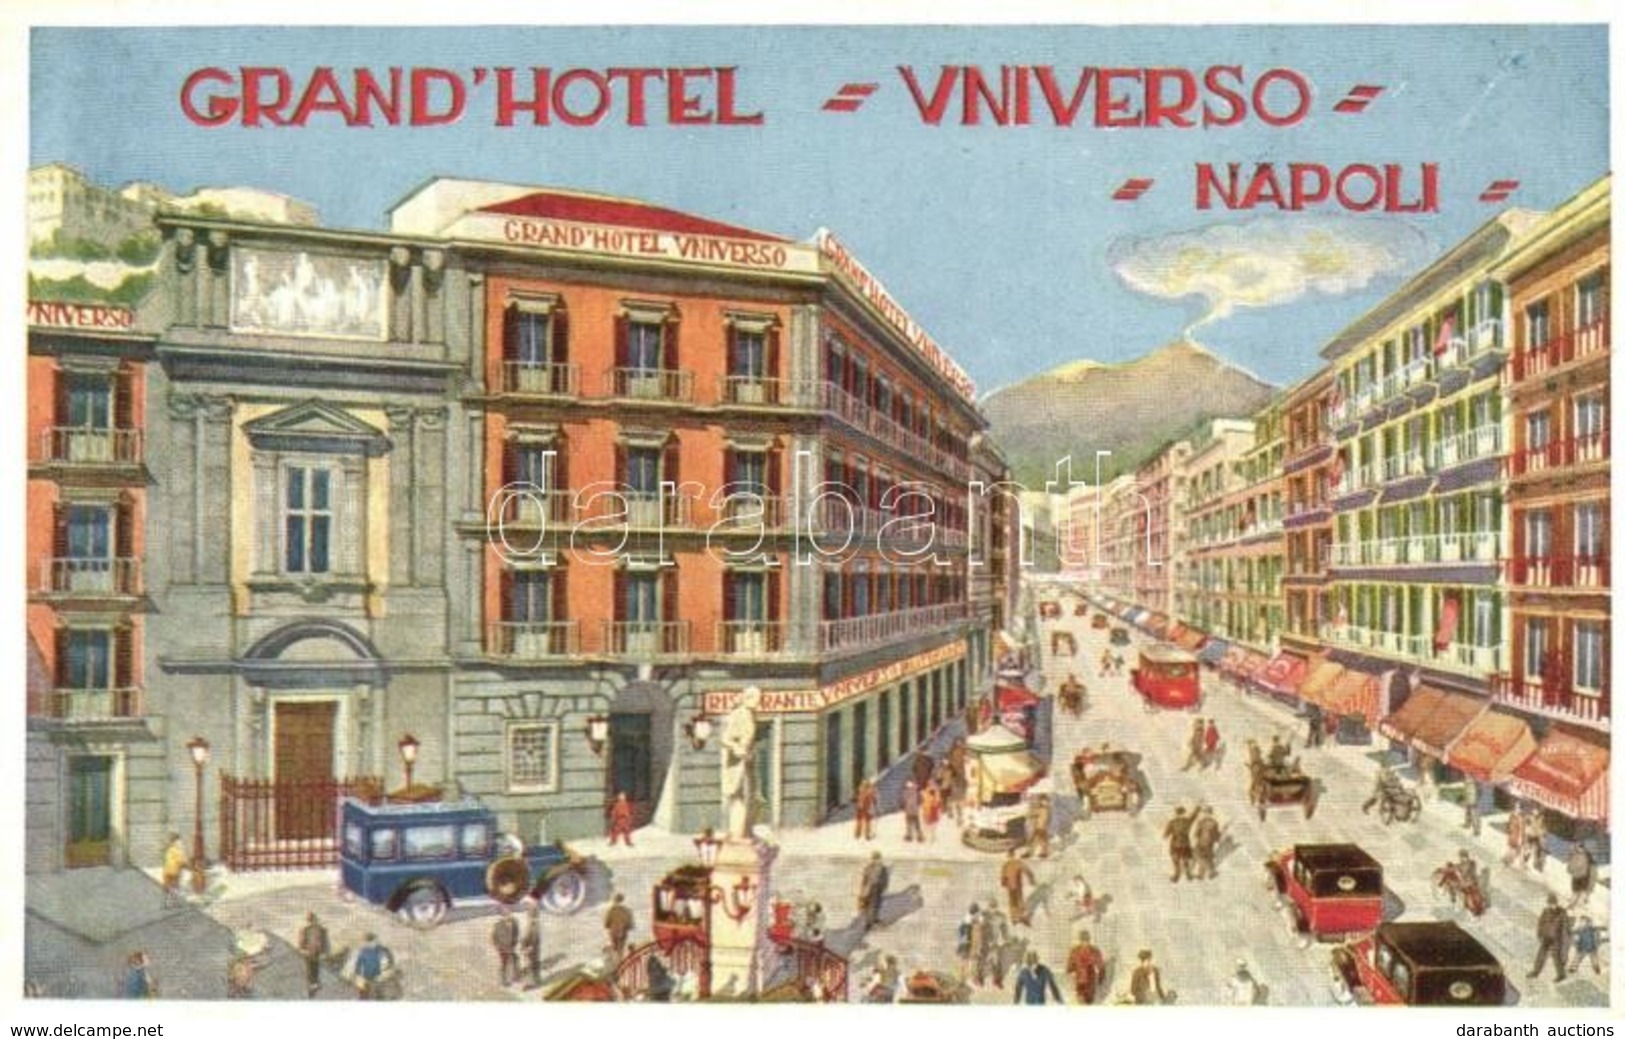 ** T2/T3 Naples, Napoli; Grand Hotel Universio, Ristorante / Hotel And Restaurant, Advertisement Card  (EK) - Non Classificati